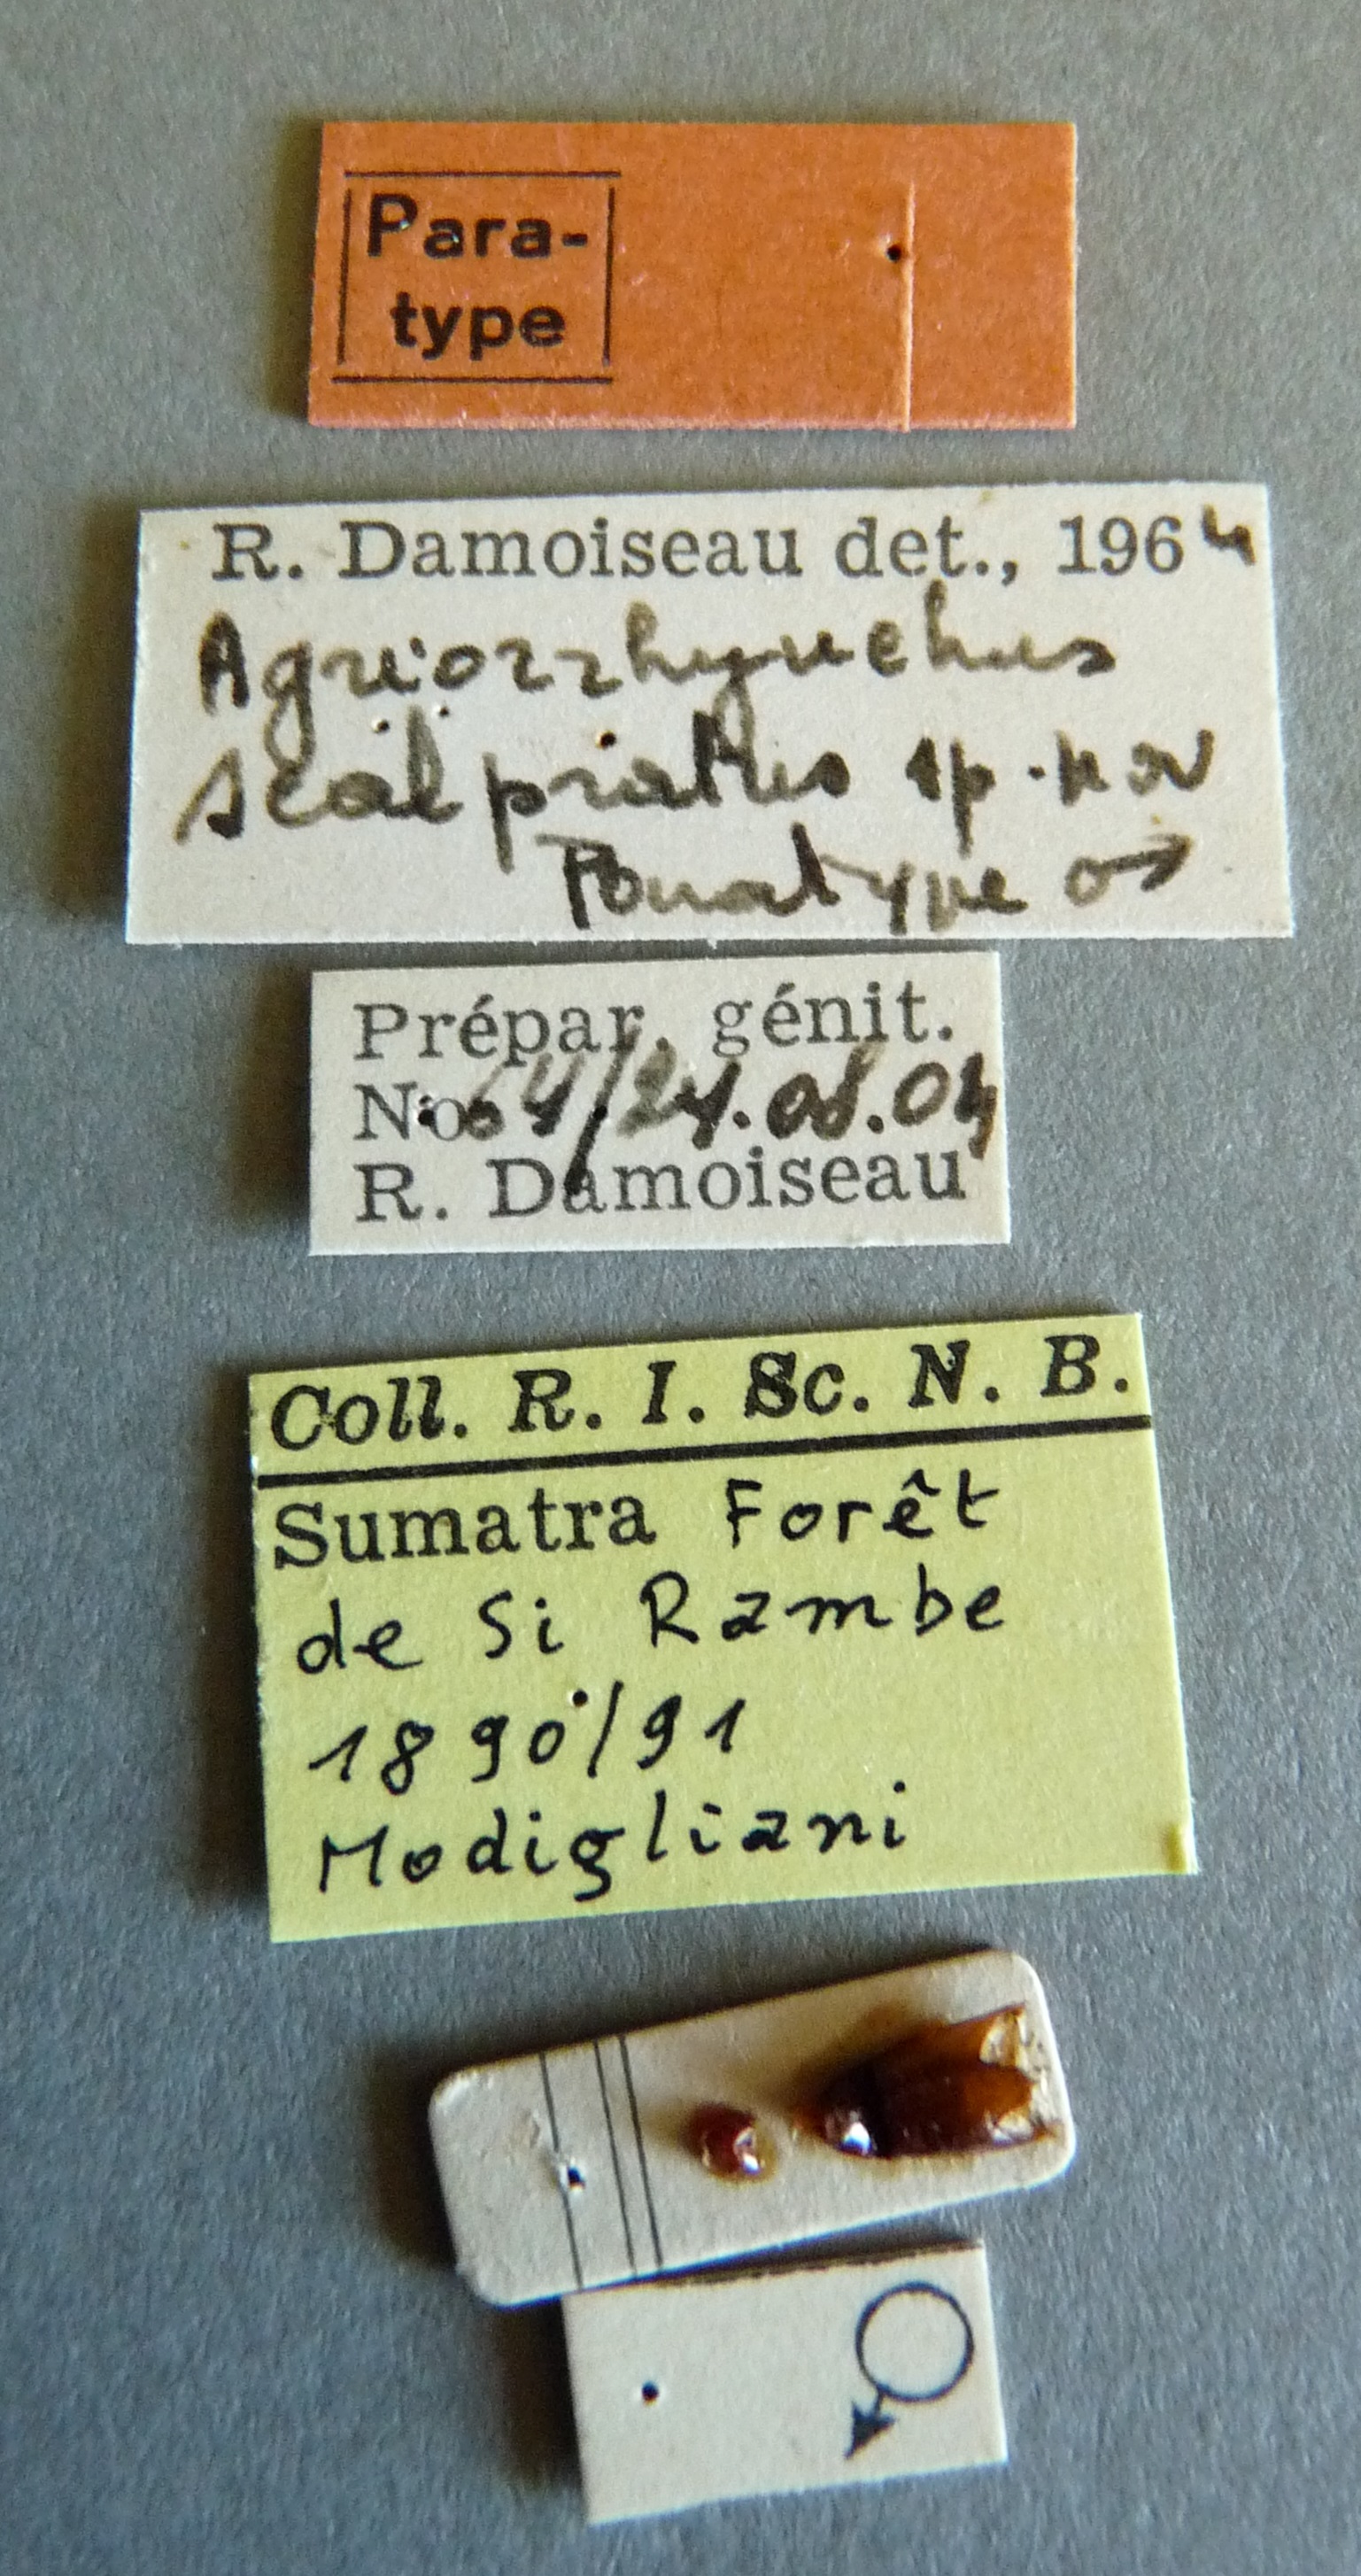 Agriorrhynchus scalpratus pt Labels